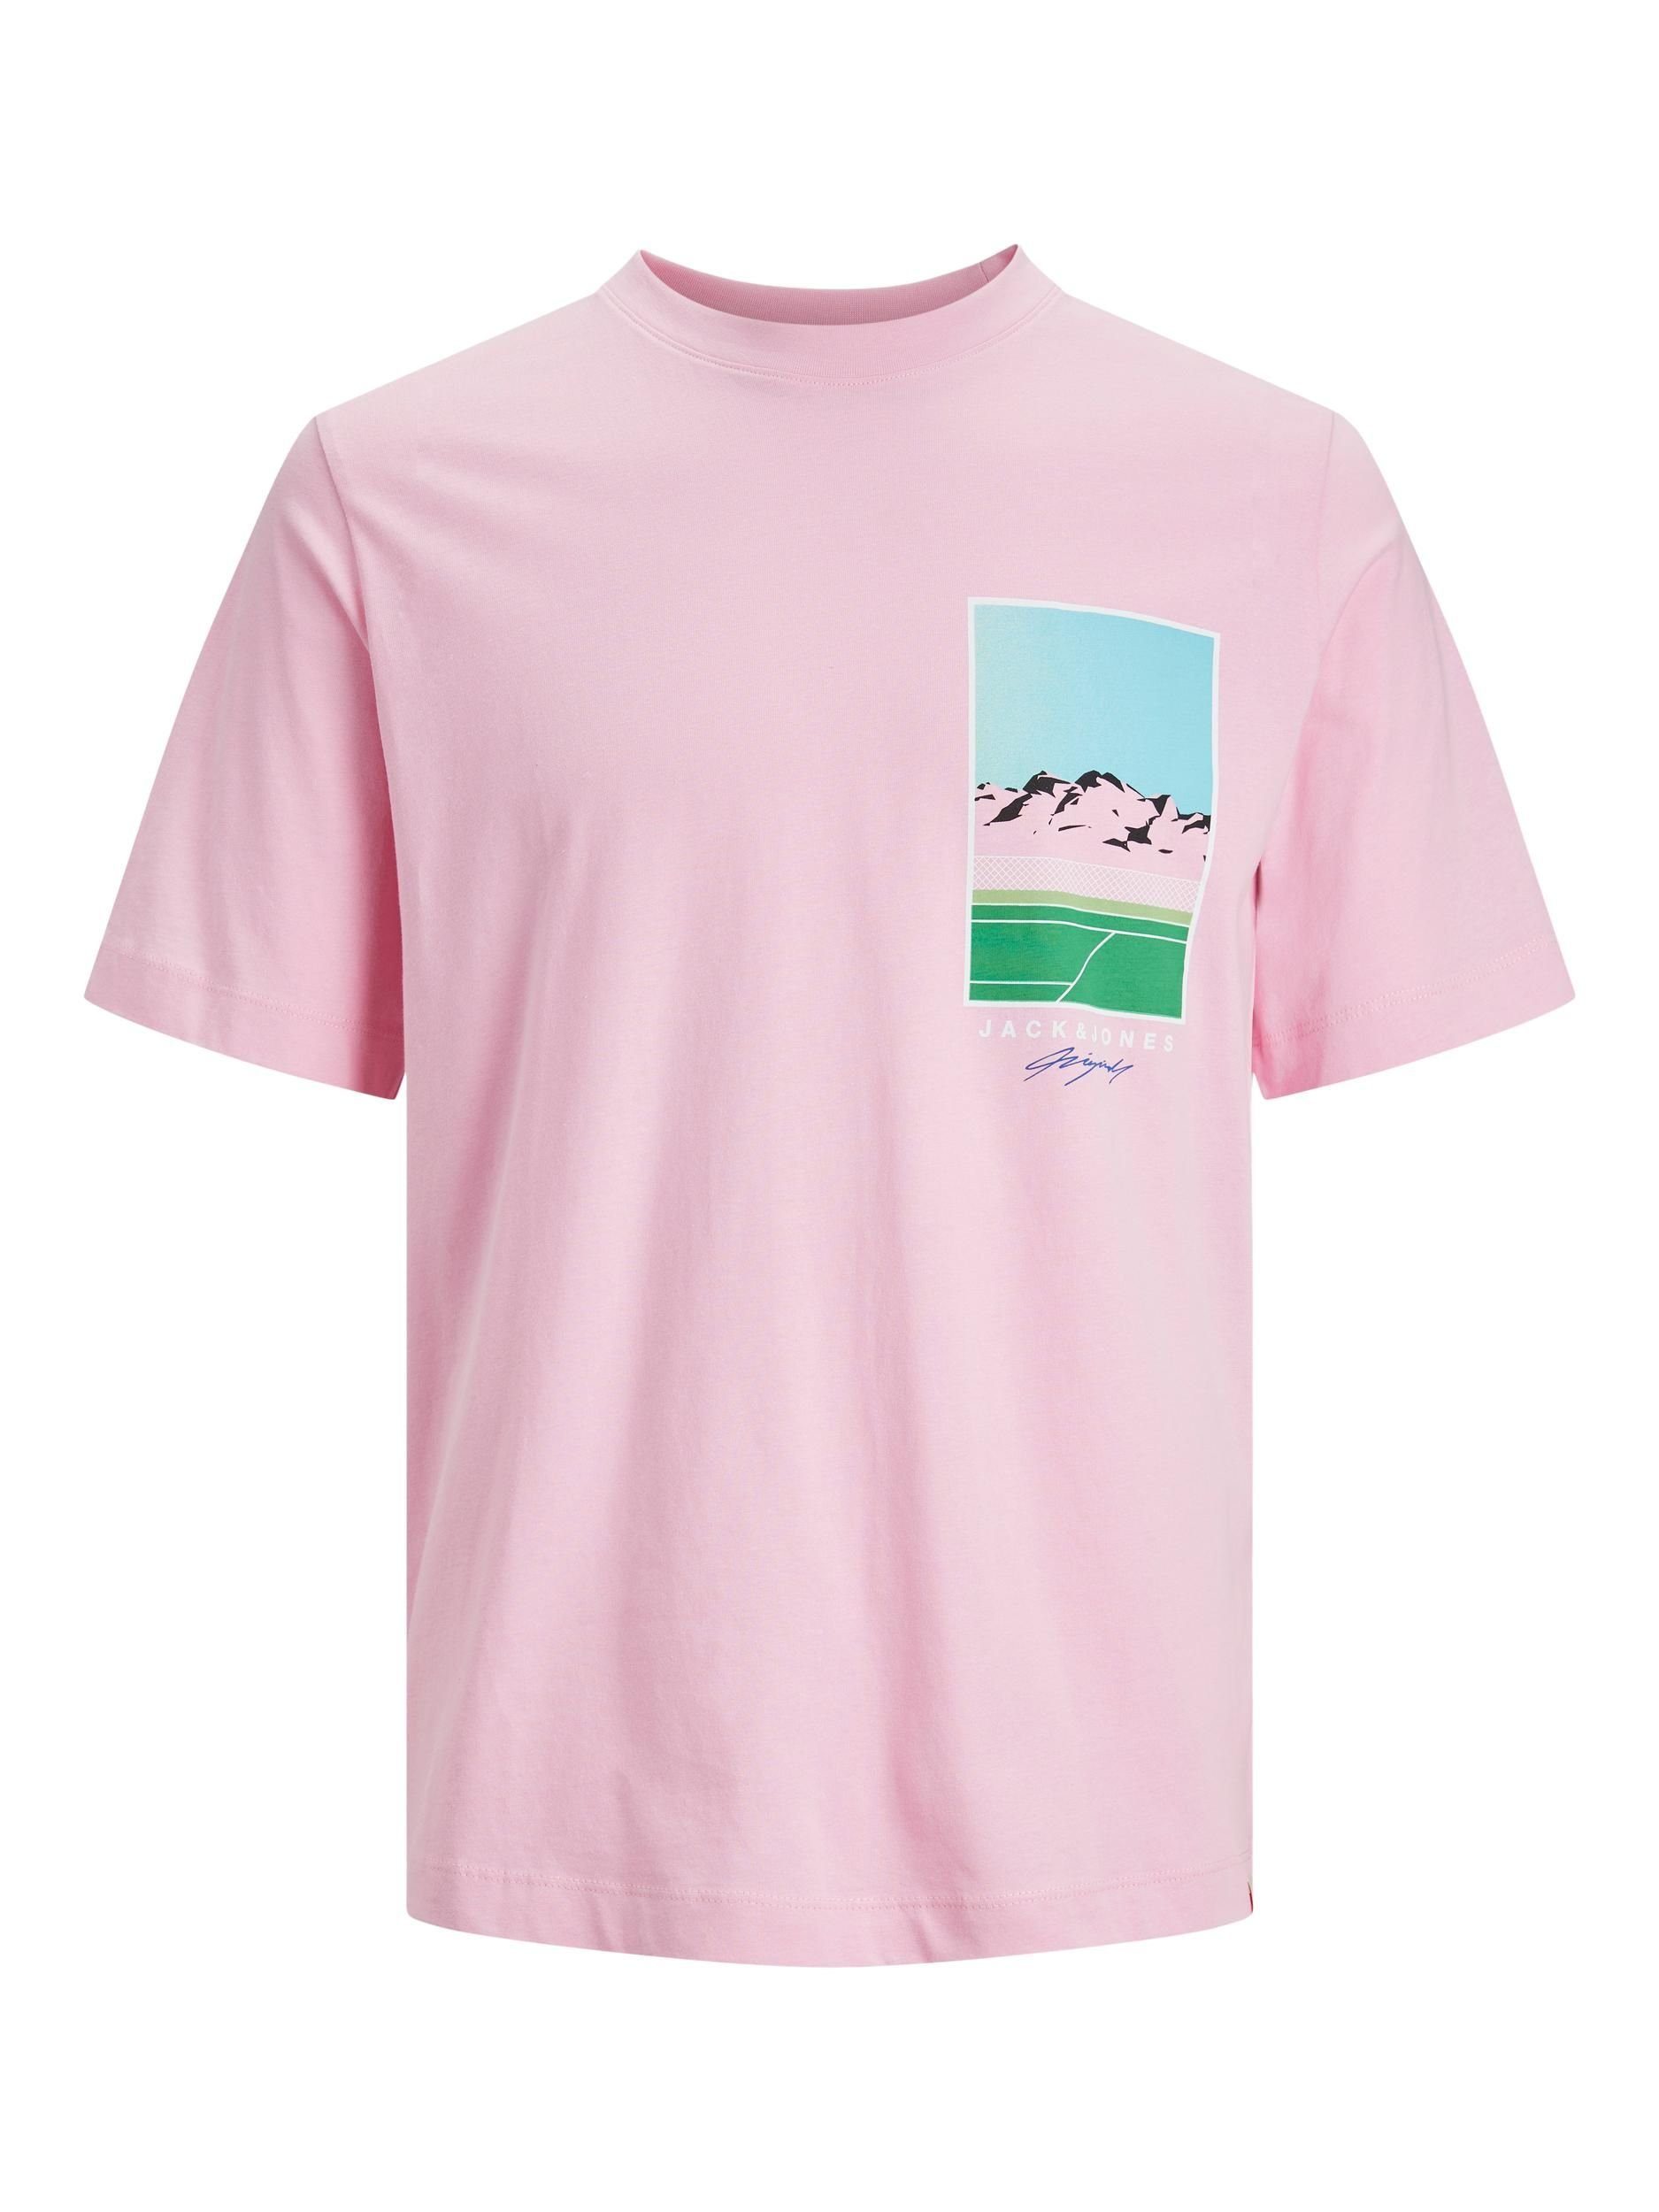 Jack & Jones ONLY T-Shirt prism pink